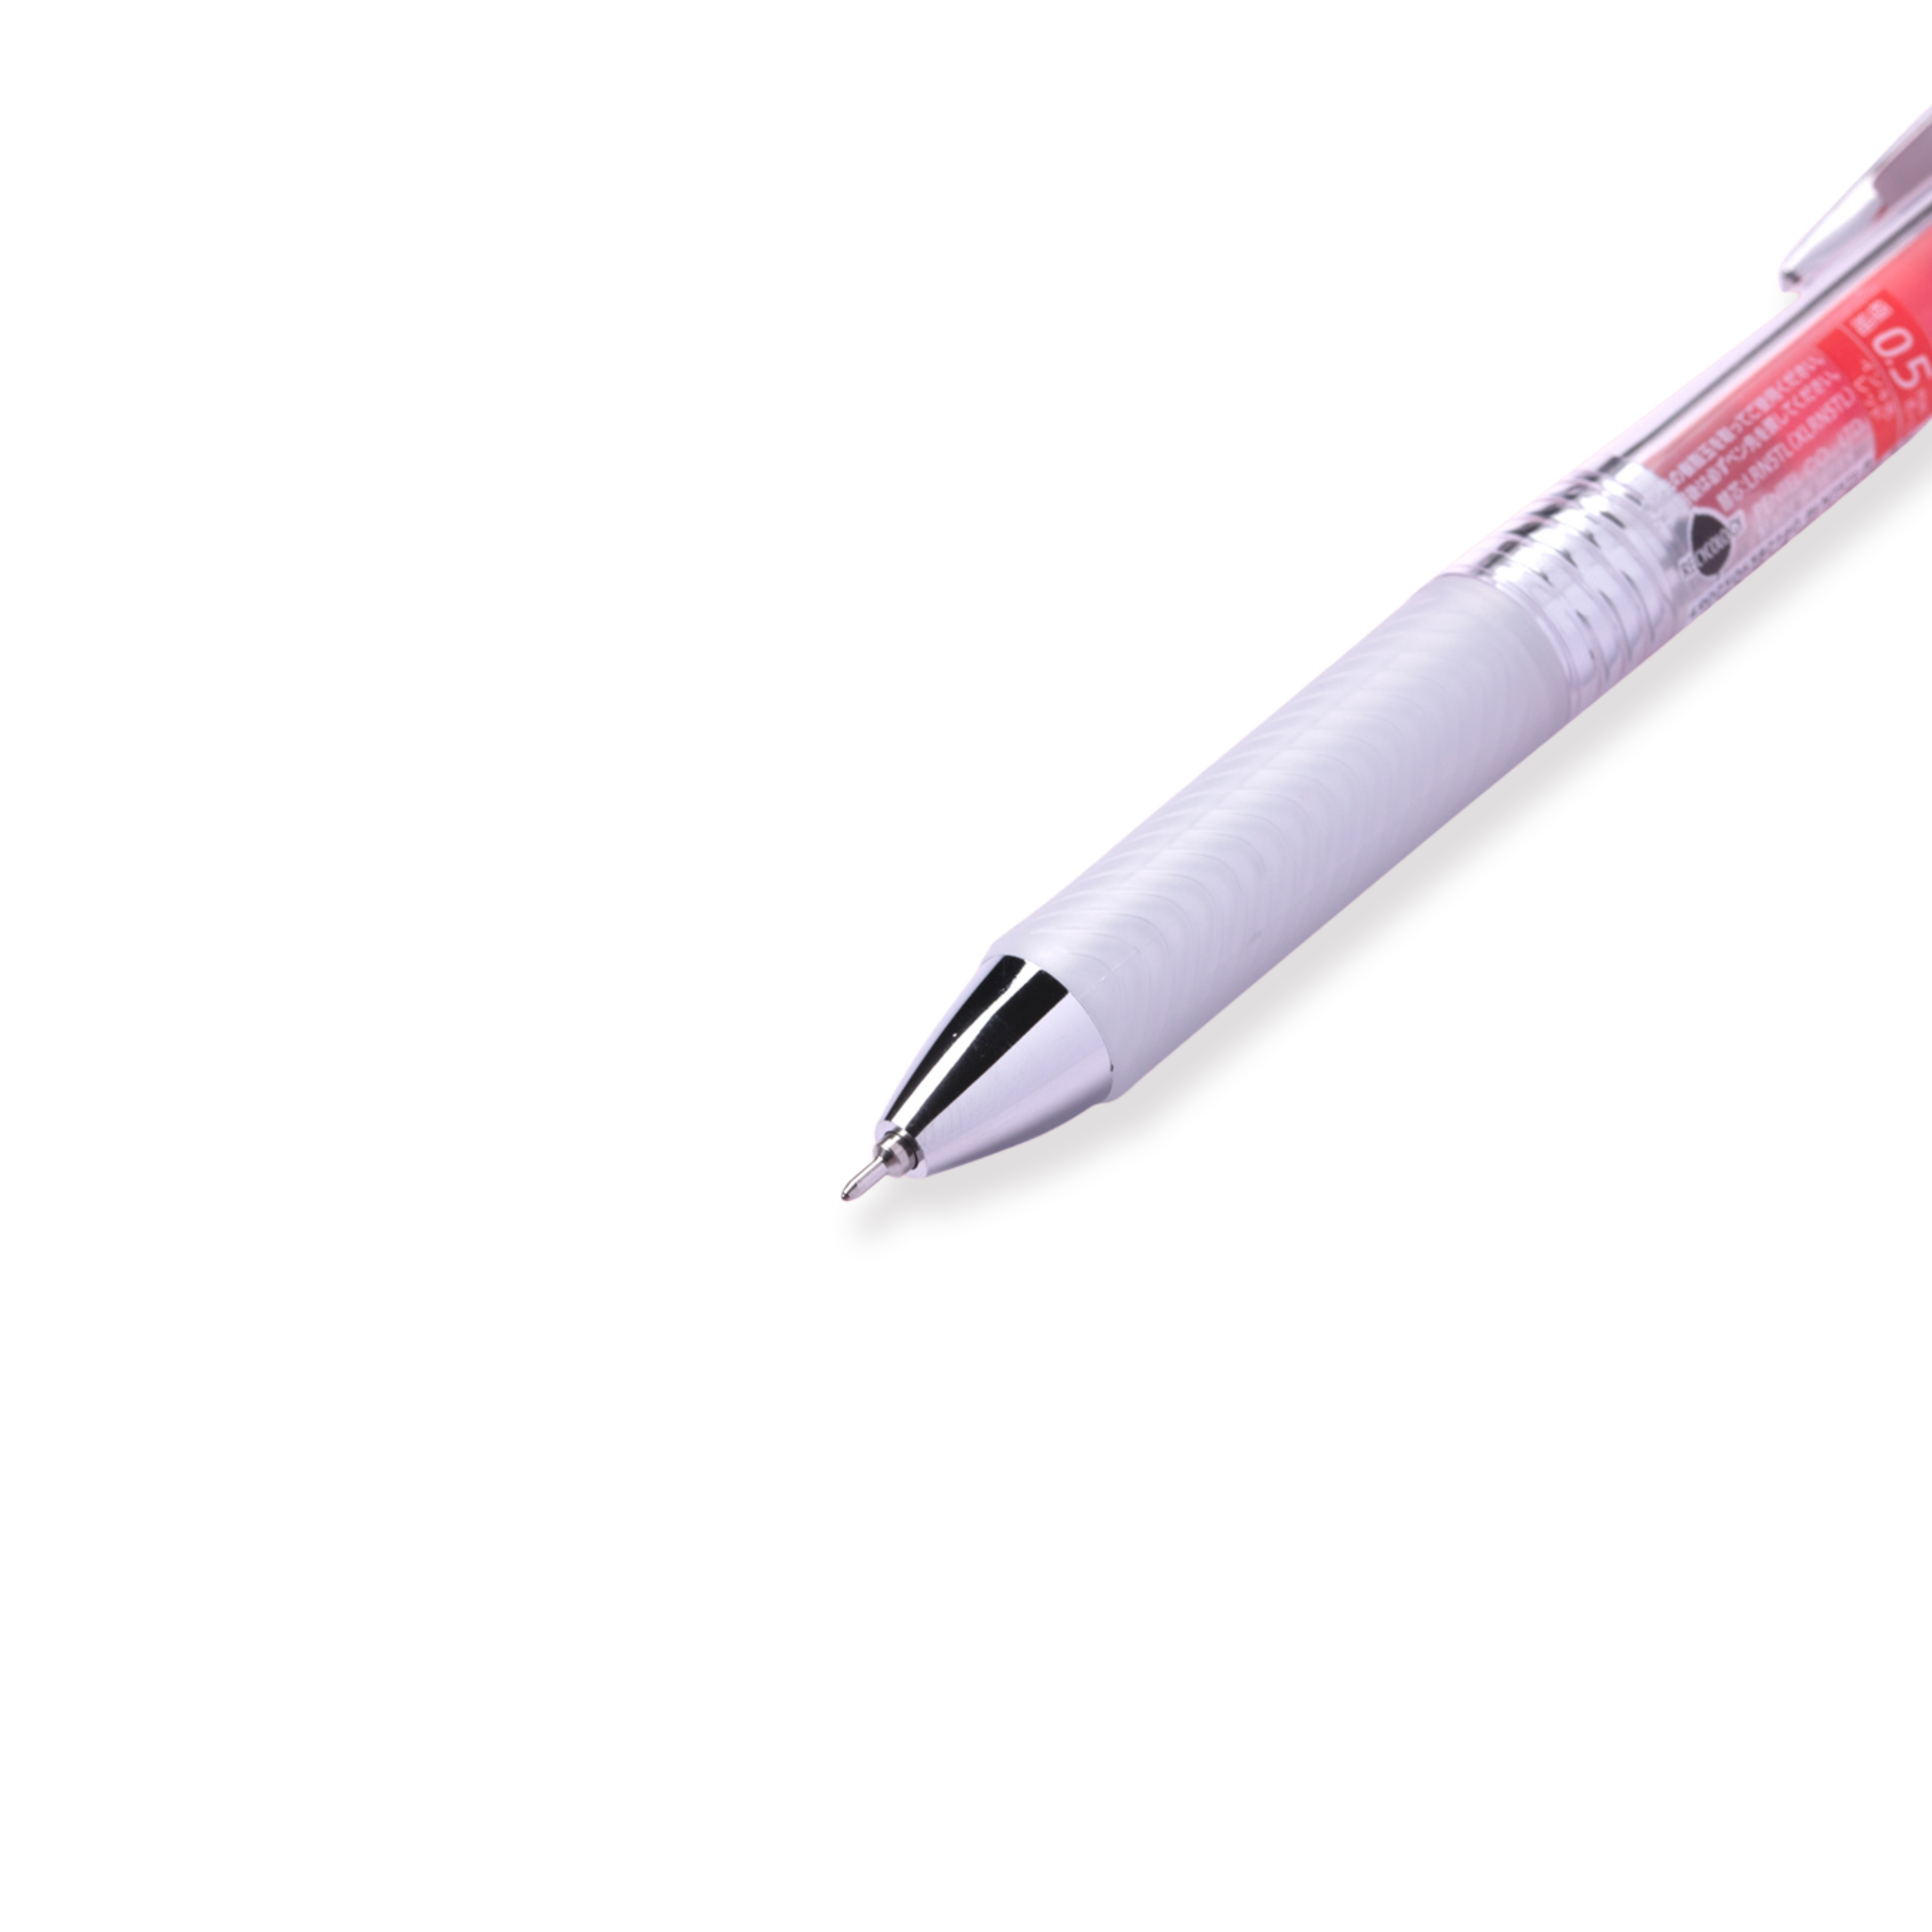 Pentel EnerGel Infree Gel Pen - 0.5 mm - Red